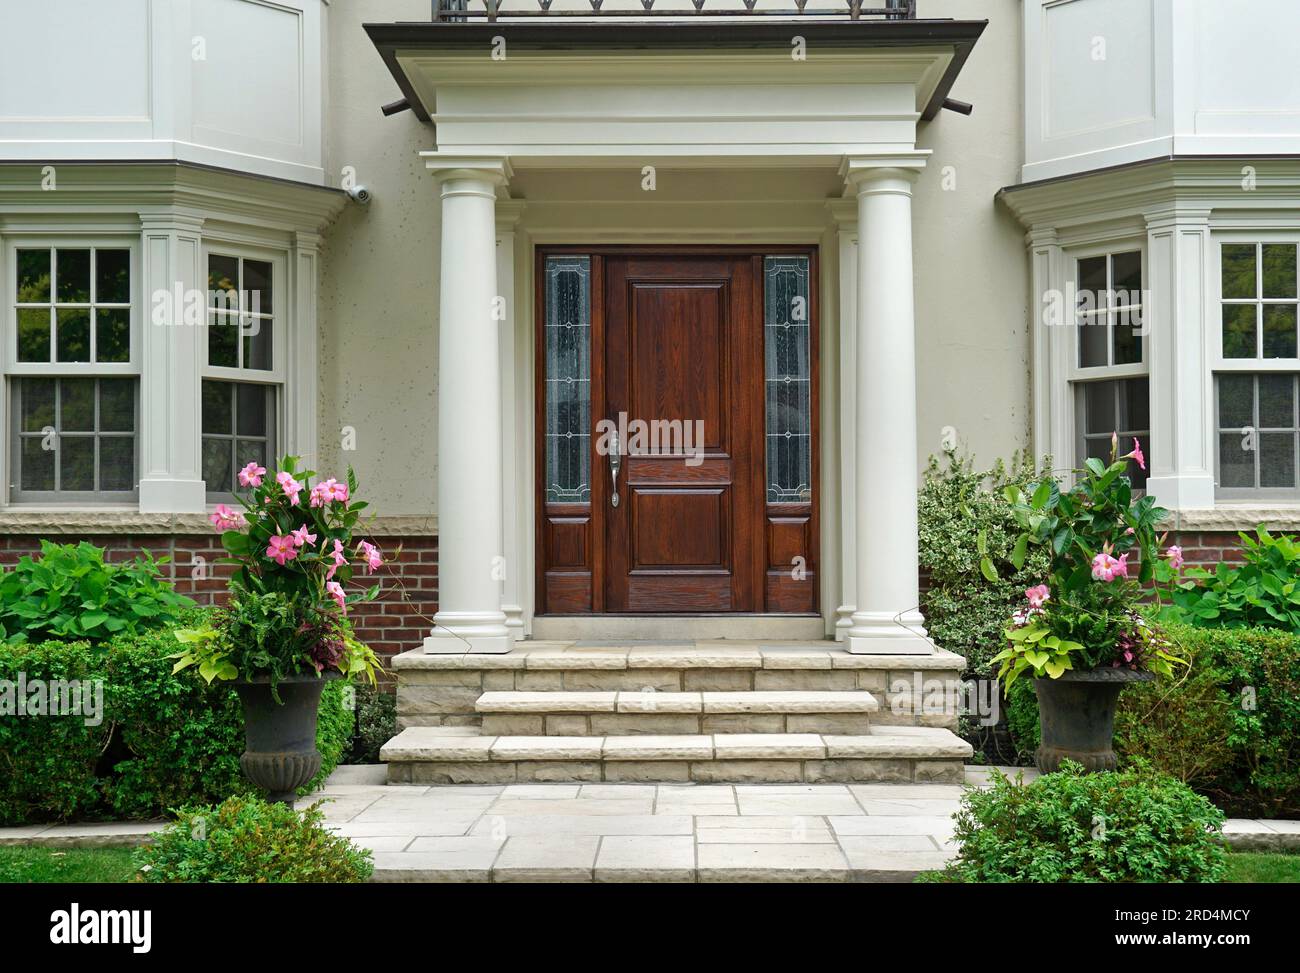 Élégante porte d'entrée en grain de bois de la maison avec entrée de portique entourée de fleurs et d'arbustes Banque D'Images